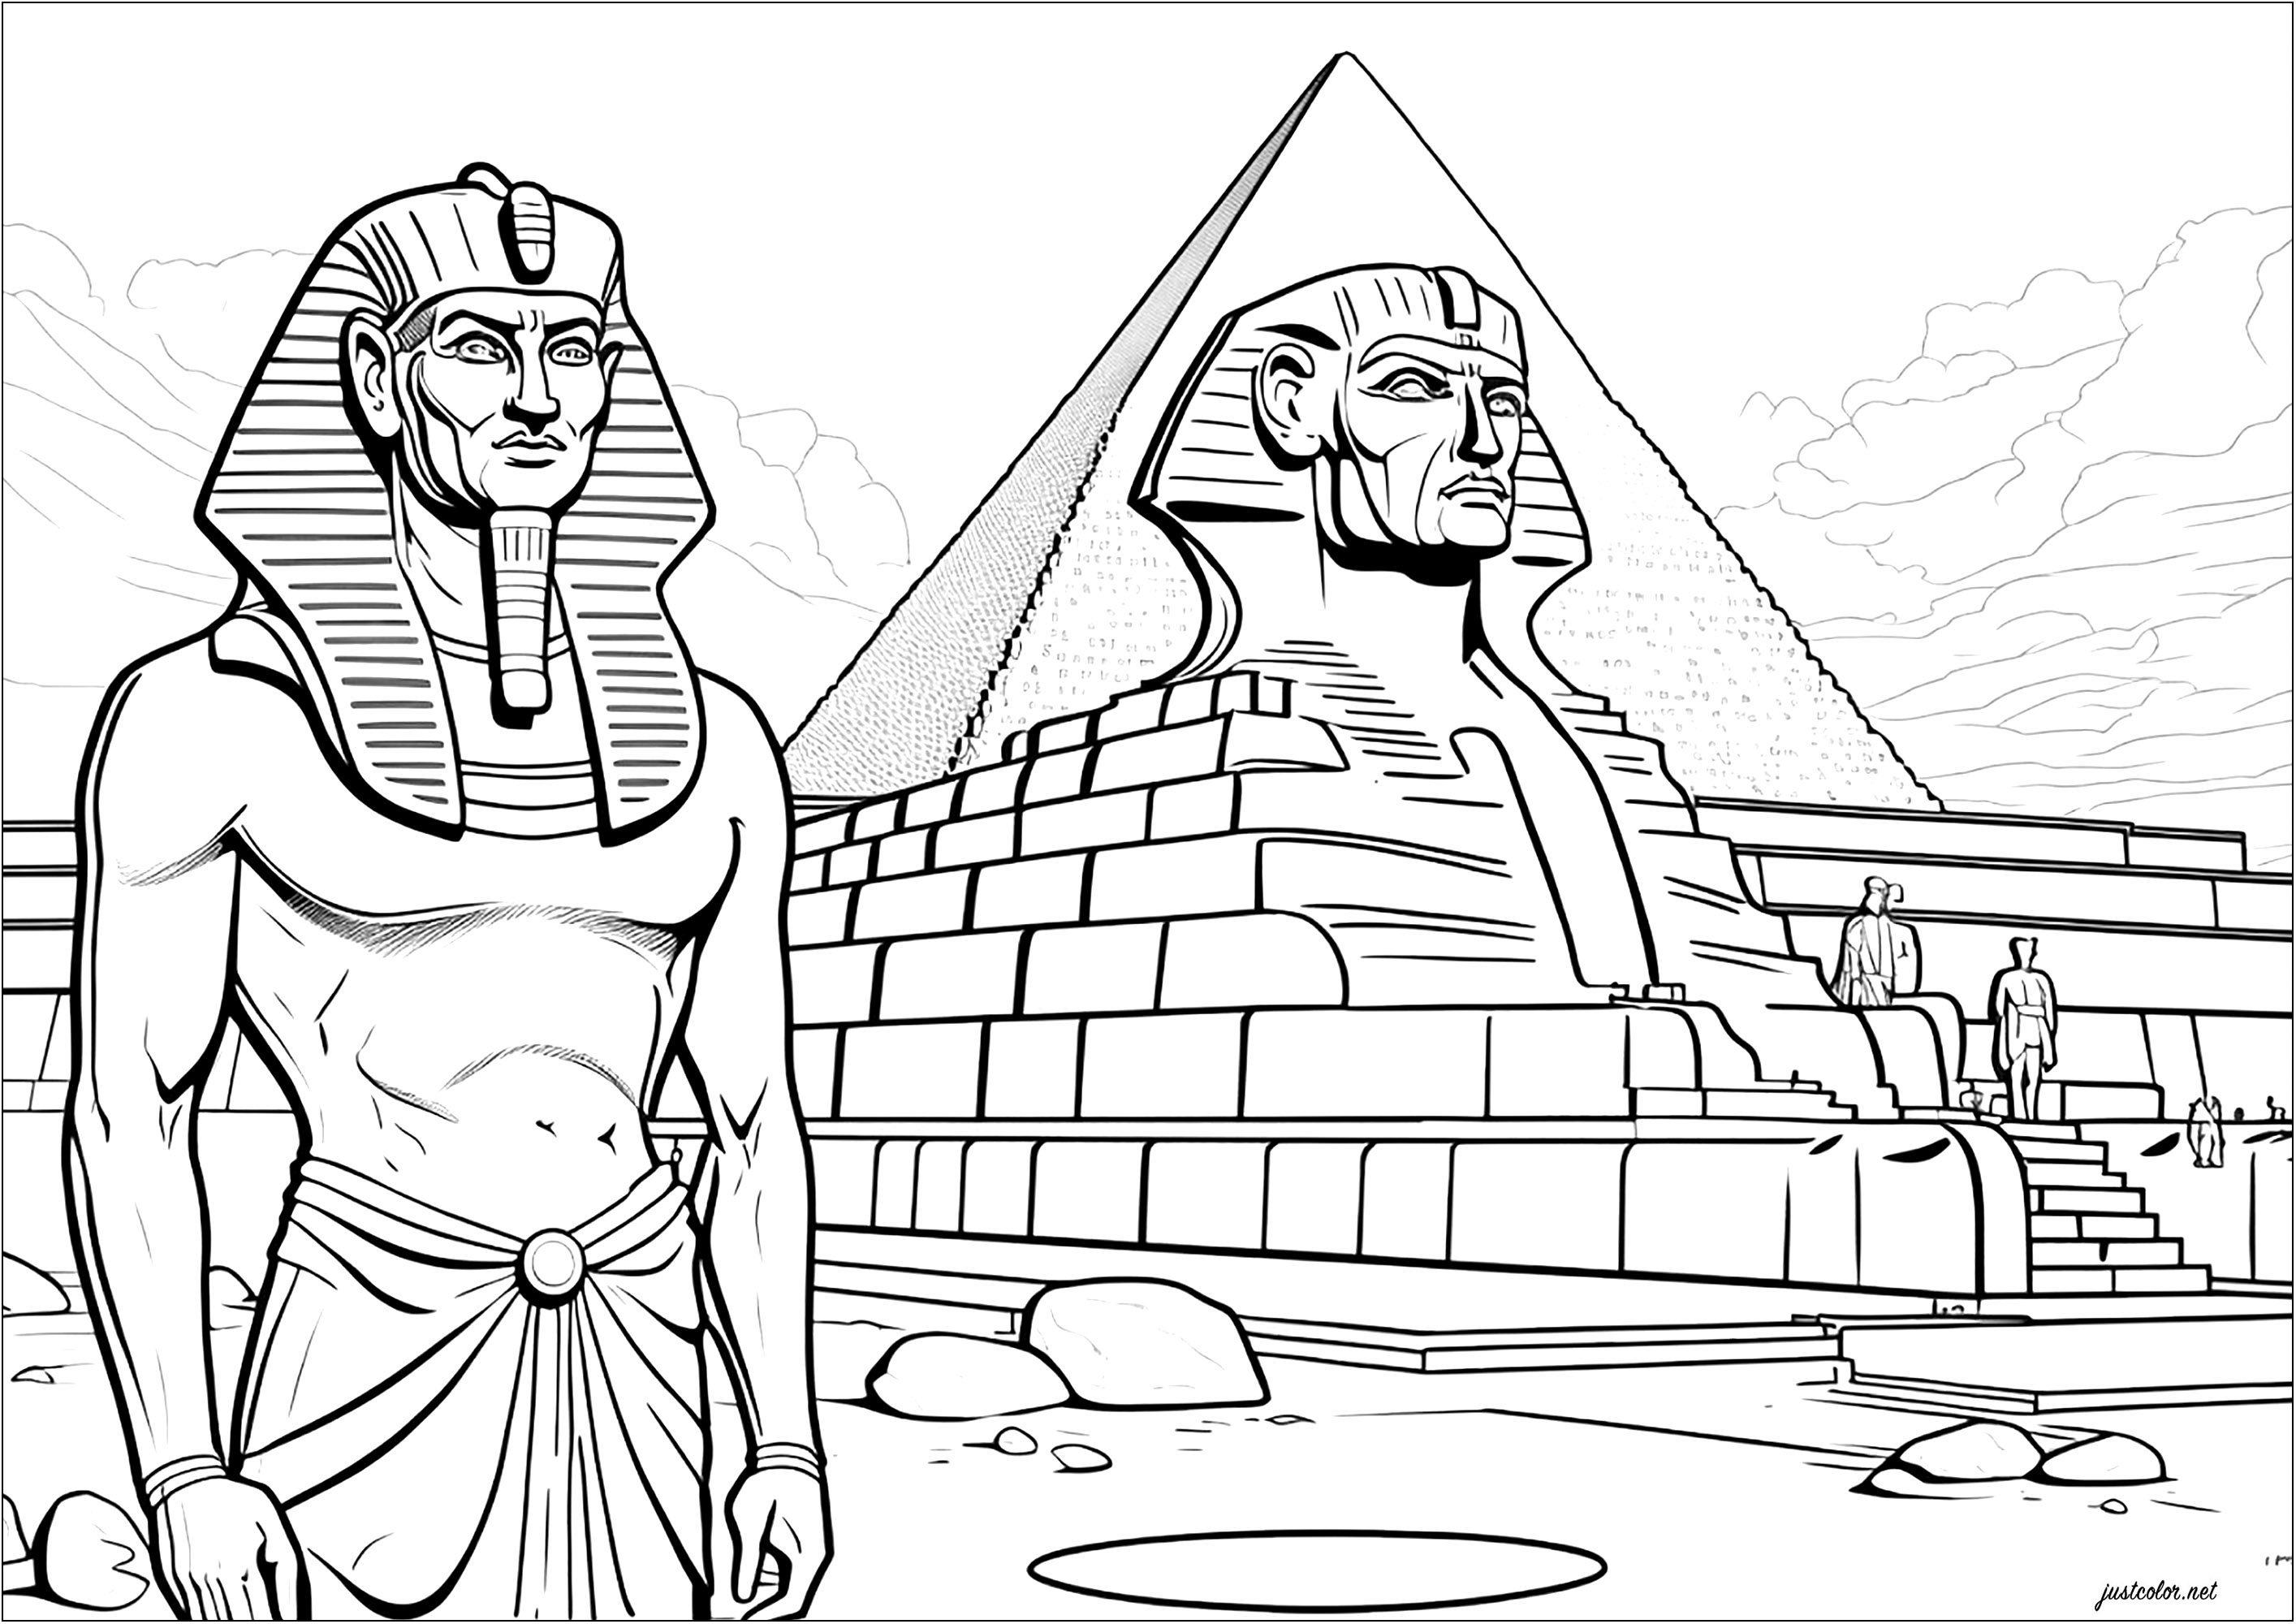 El faraón ante su esfinge y su pirámide. Esta página para colorear muestra a un faraón de pie ante un esfinge que lo representa y una gran pirámide. Es una magnífica representación del antiguo Egipto y su grandeza.